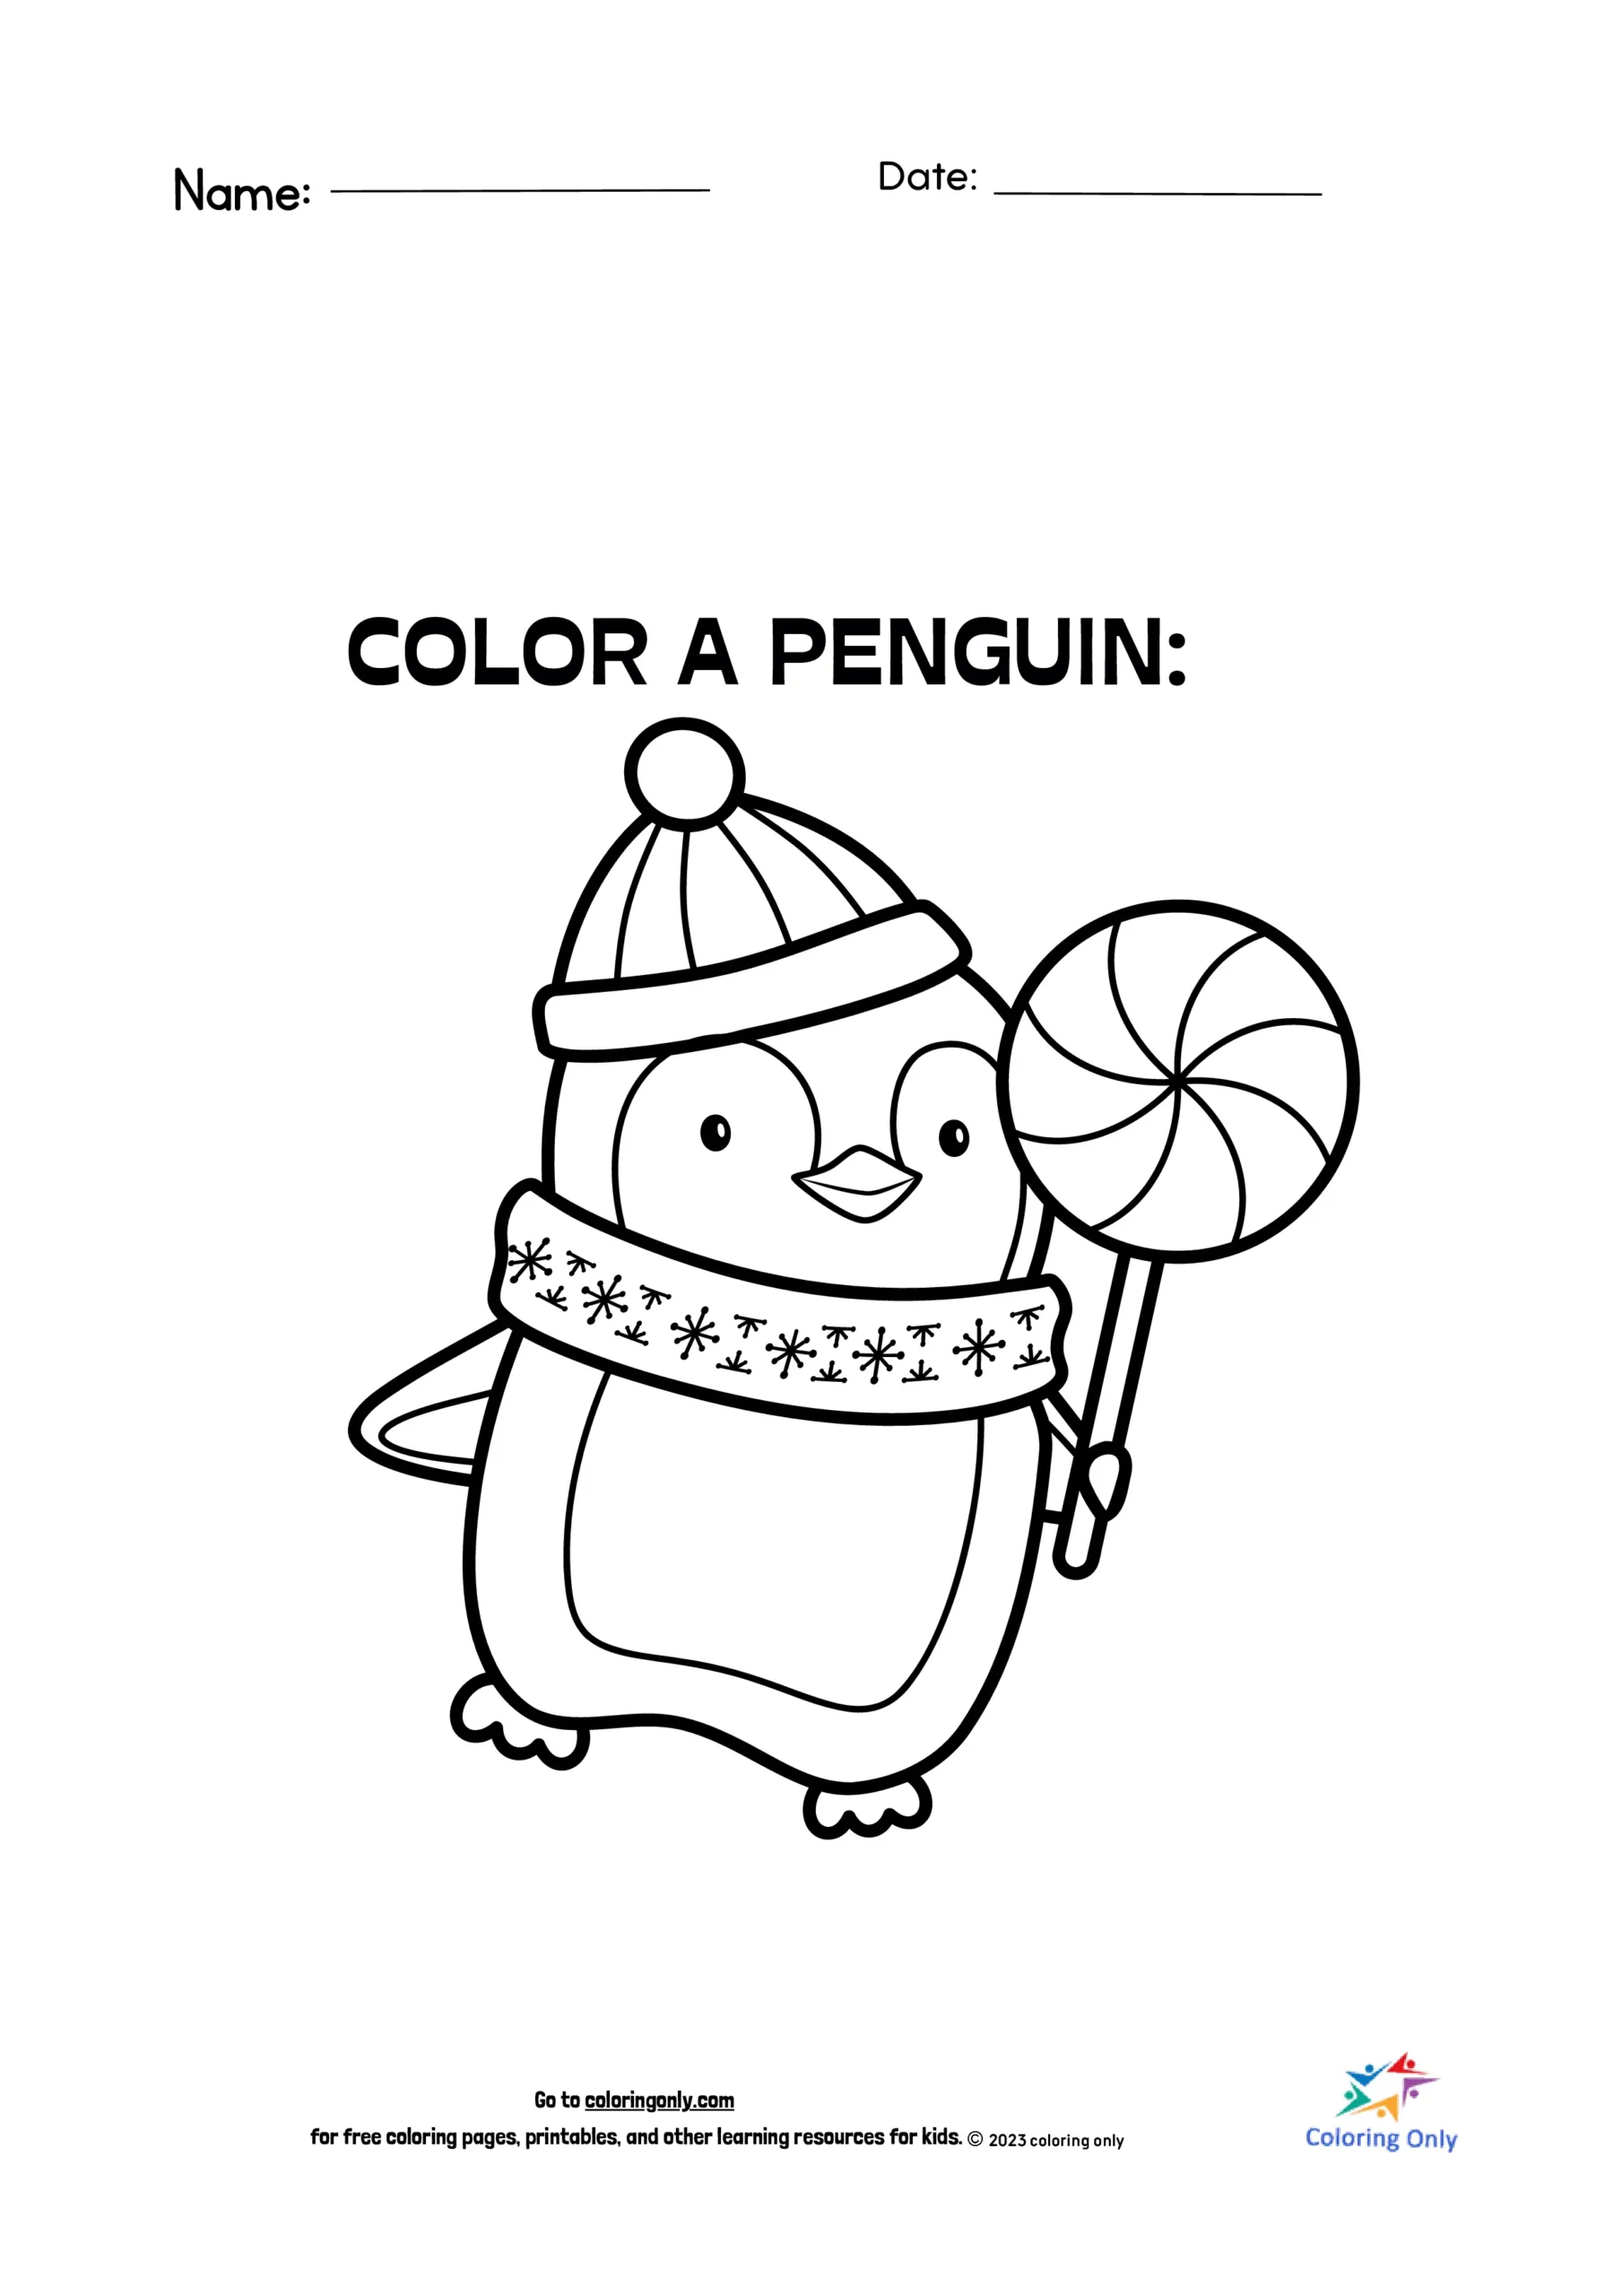 Färbe einen Pinguin